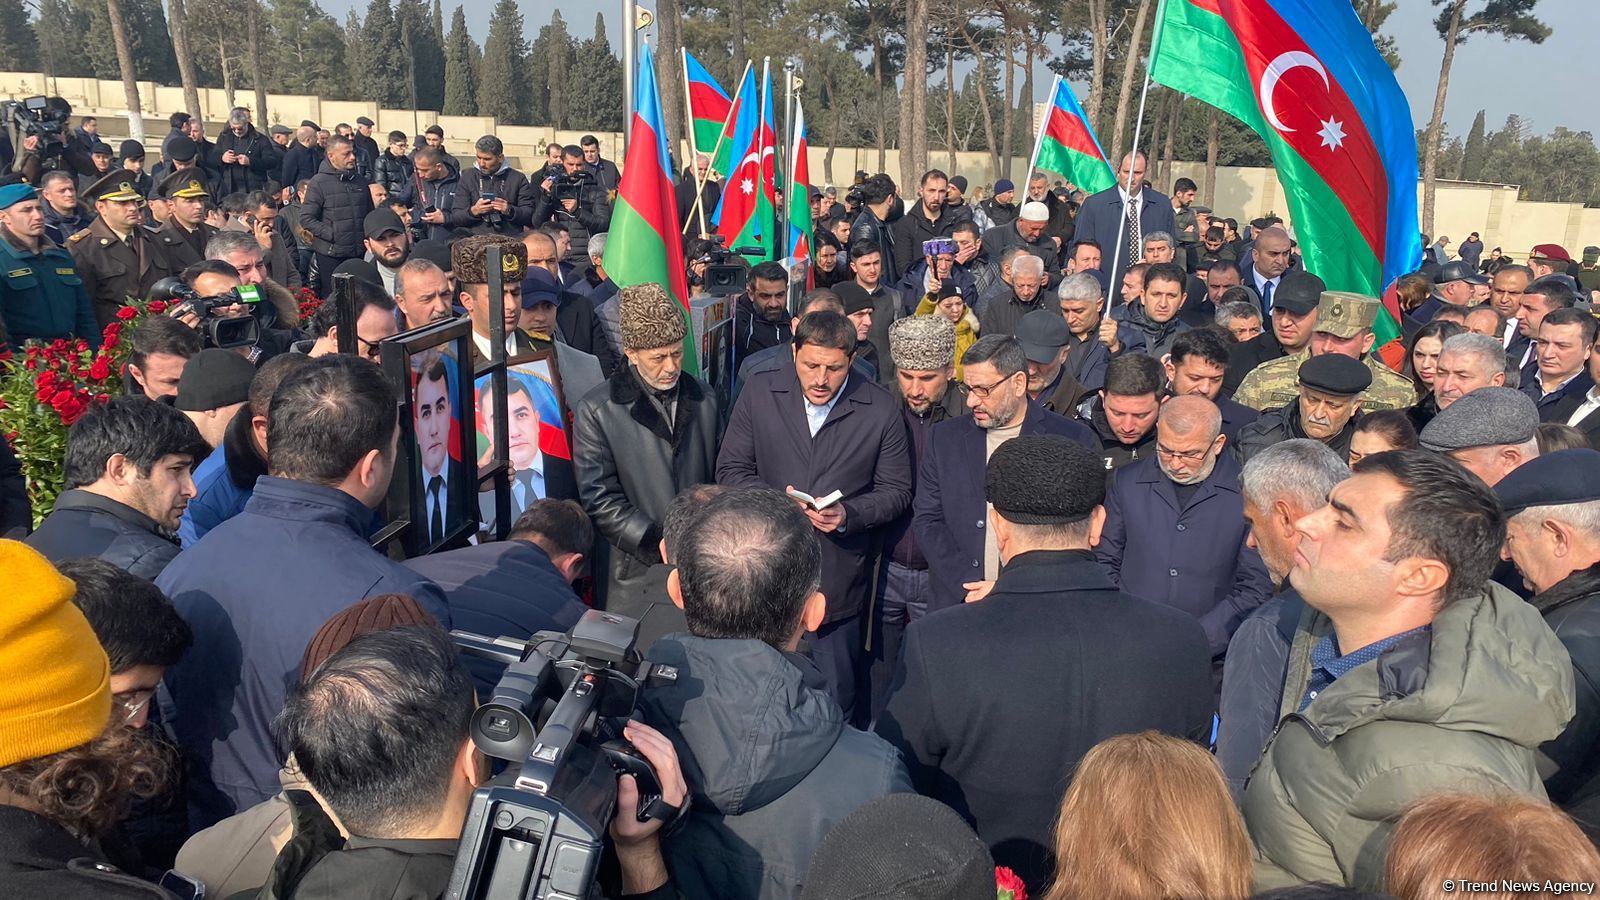 На похоронах Орхана Аскерова массовое скопление людей, пришедших попрощаться с шехидом (ФОТО/ВИДЕО)